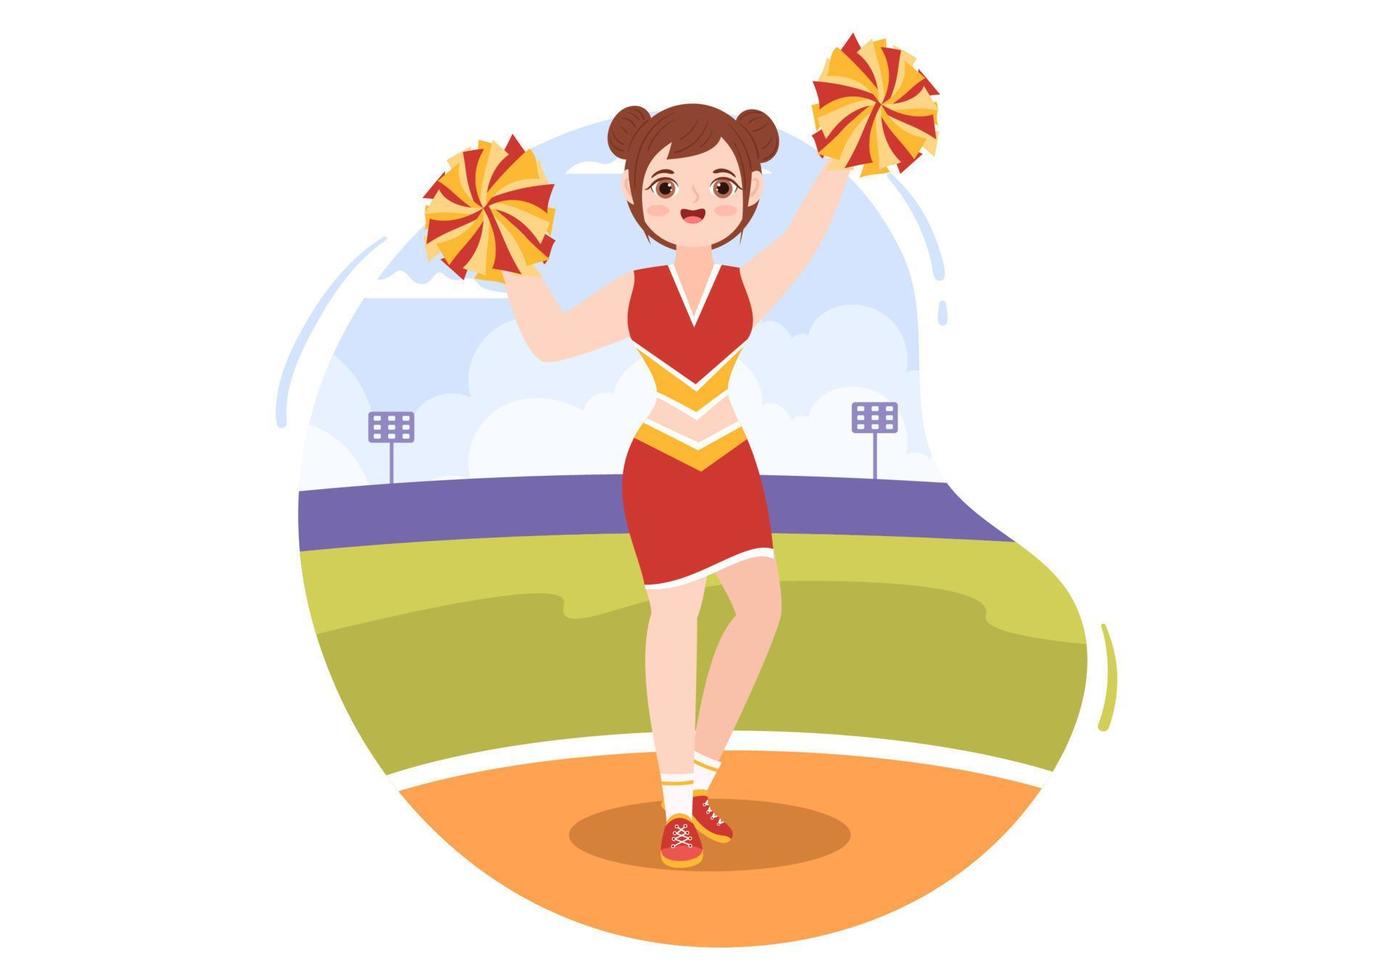 cheerleadermädchen mit pompons des tanzens und springens zur unterstützung des mannschaftssports während des wettbewerbs auf flachen handgezeichneten vorlagenillustrationen der karikatur vektor